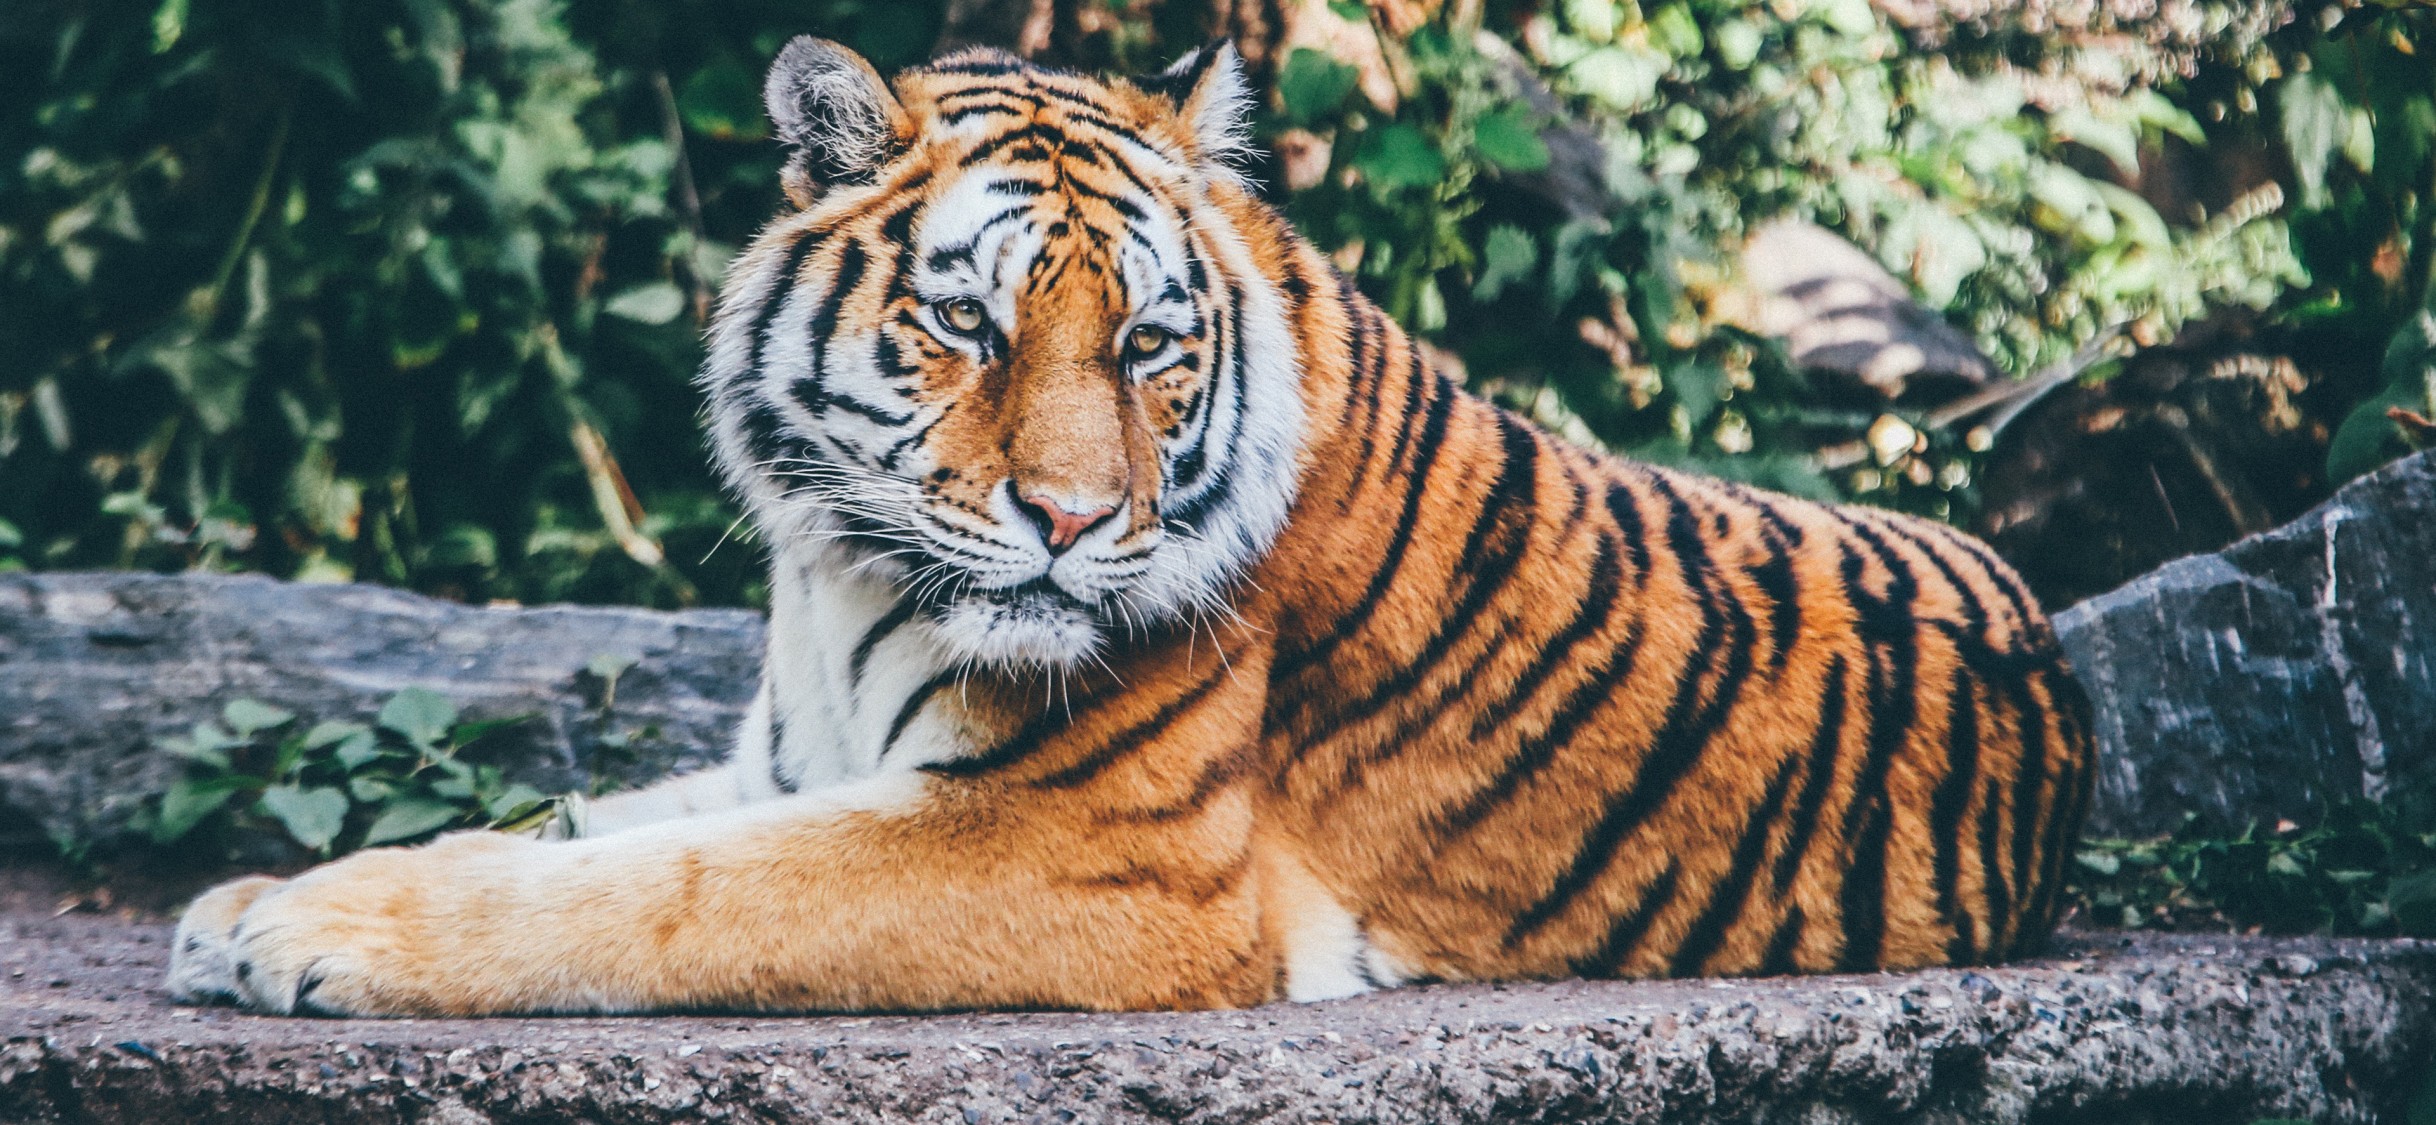 Tiger Hd Best - HD Wallpaper 